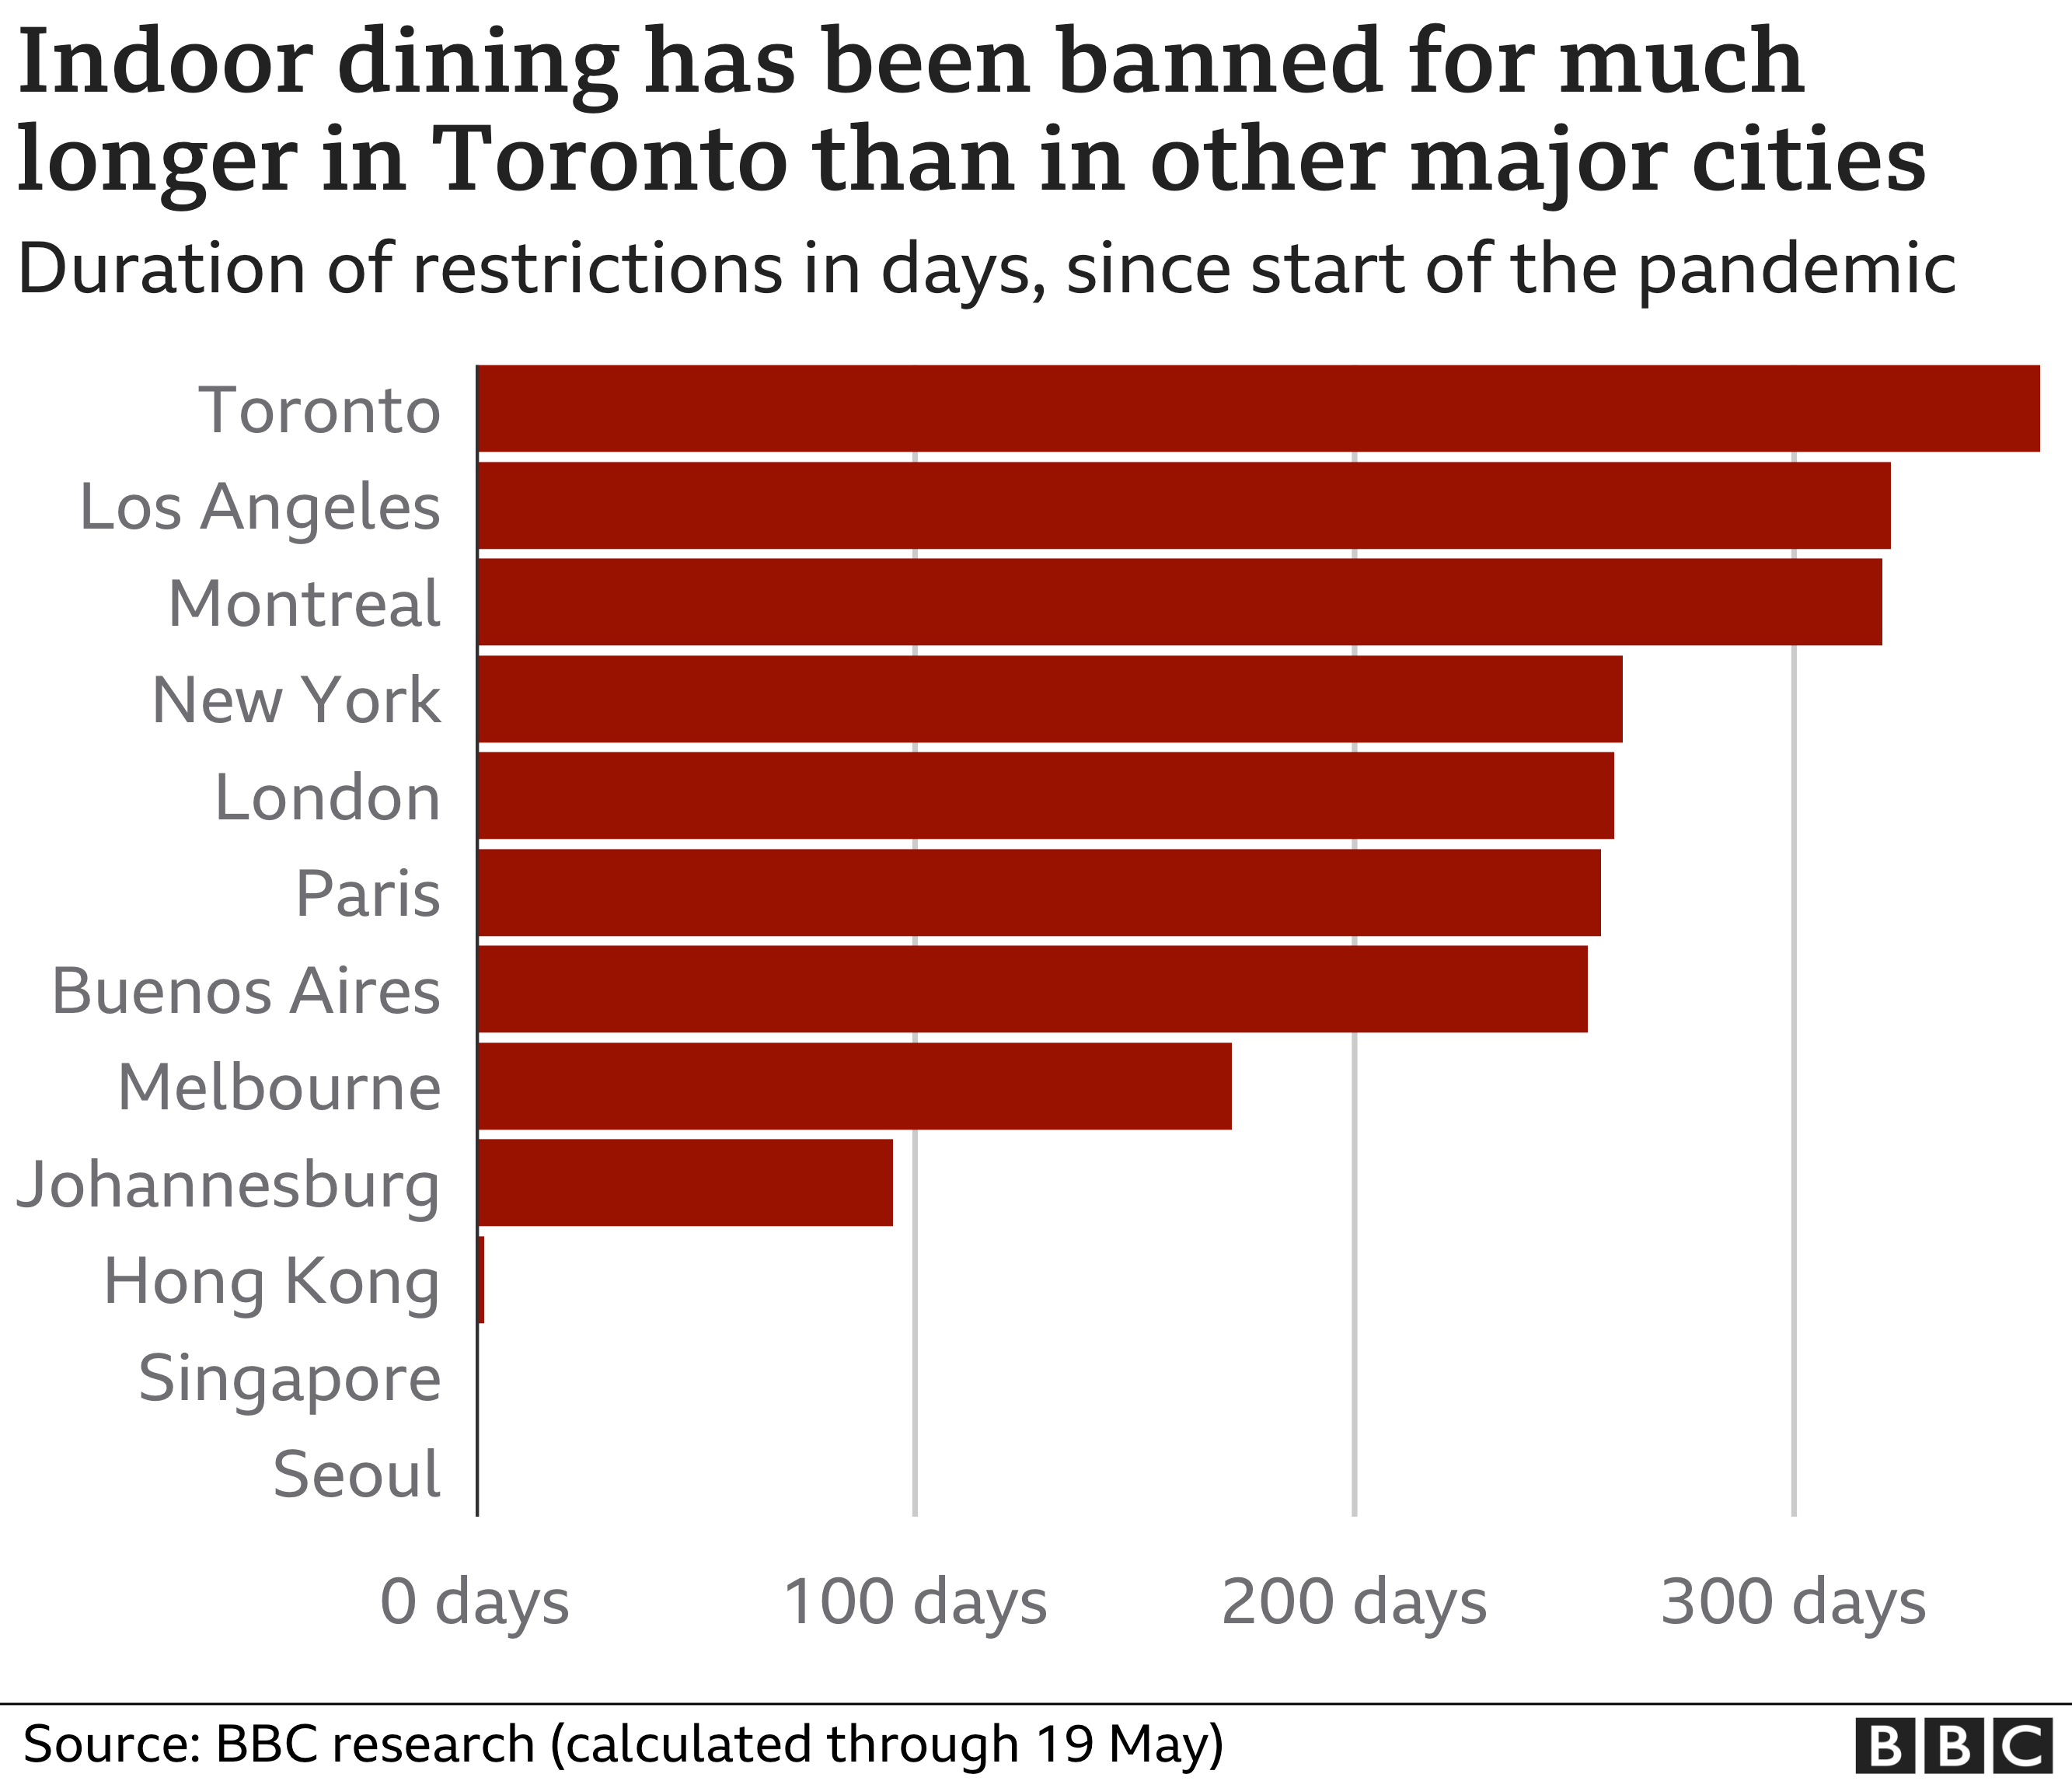 Ужин в помещении был запрещен в Торонто дольше, чем в других крупных городах